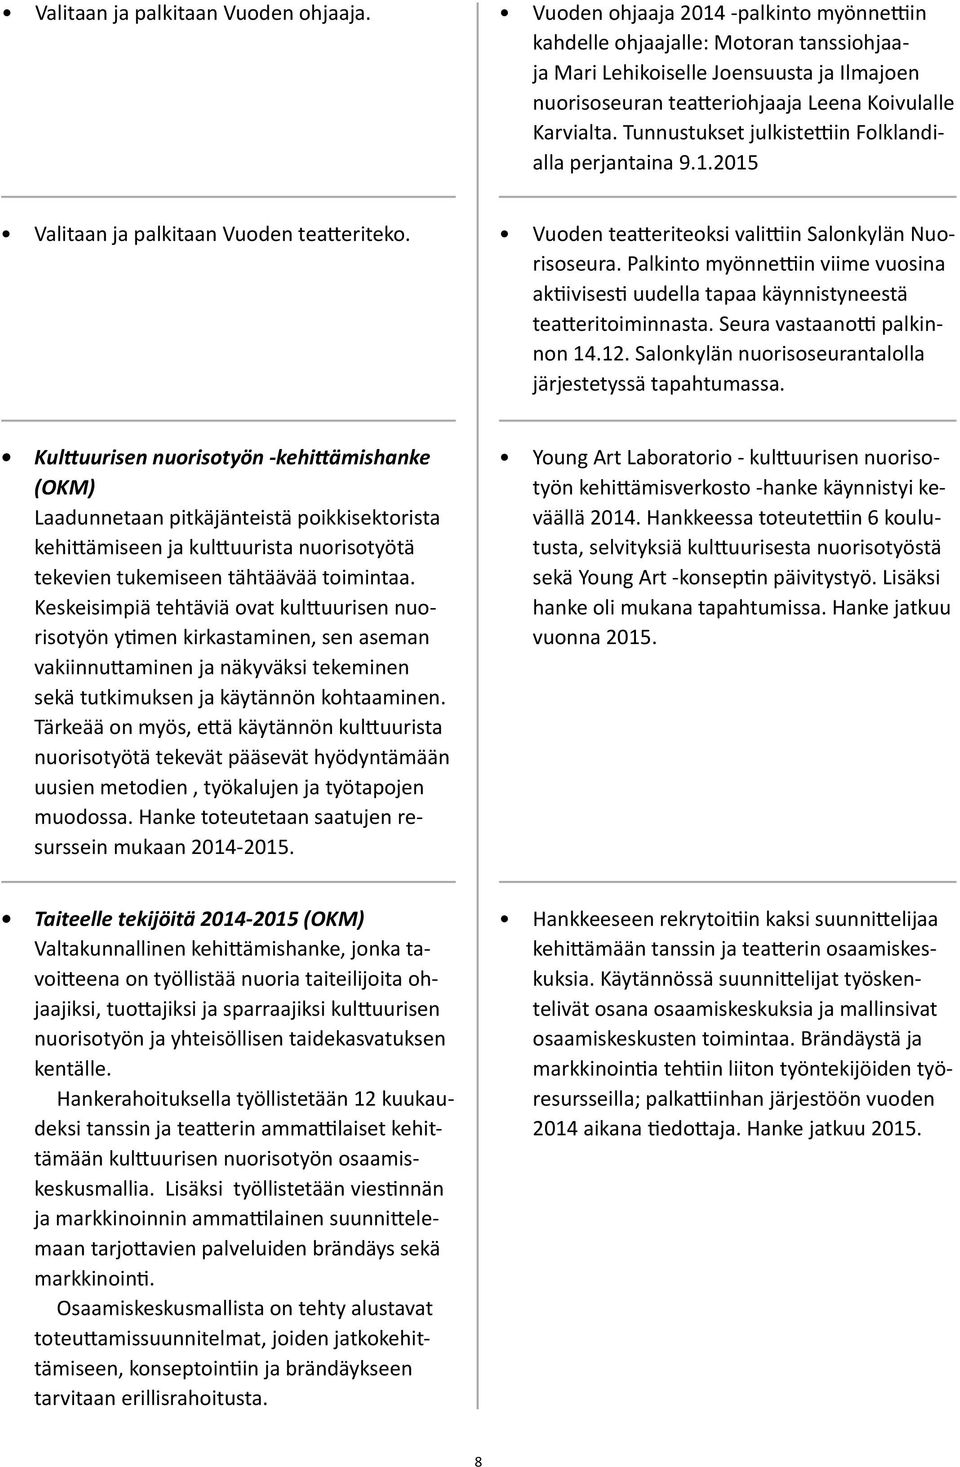 Tunnustukset julkistettiin Folklandialla perjantaina 9.1.2015 Valitaan ja palkitaan Vuoden teatteriteko. Vuoden teatteriteoksi valittiin Salonkylän Nuorisoseura.